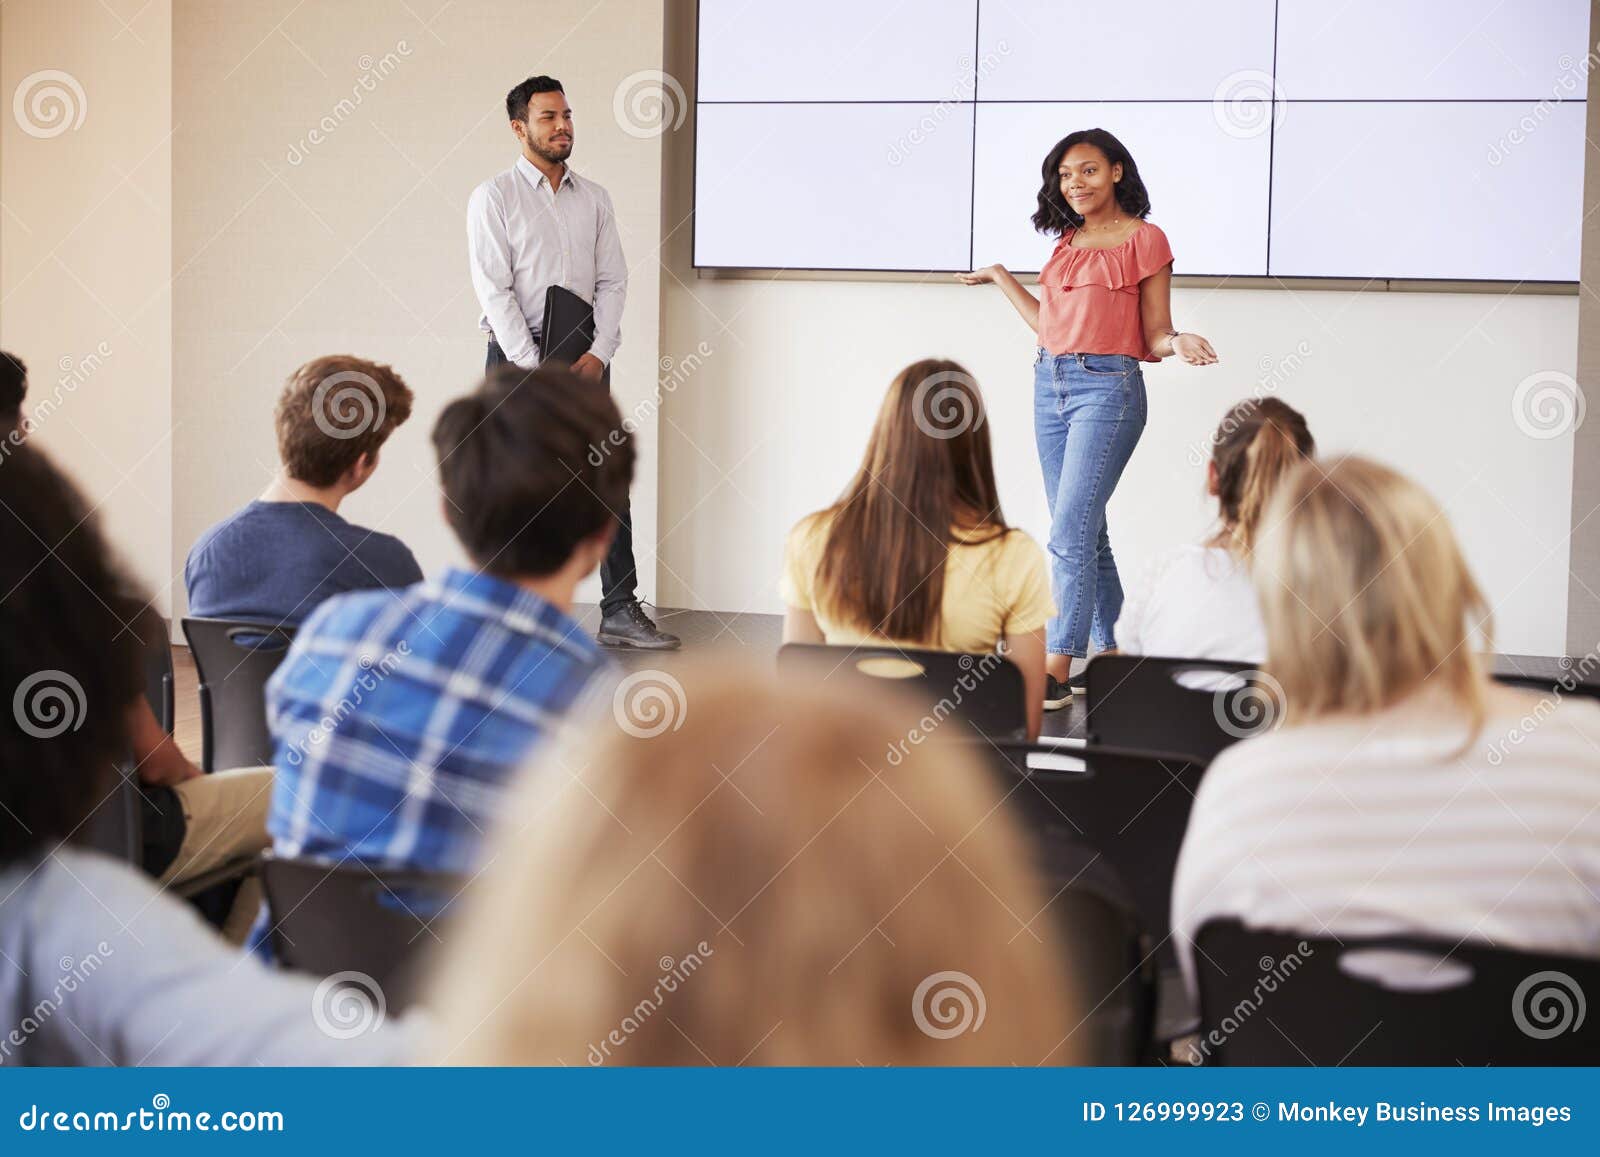 presenting a speech in class